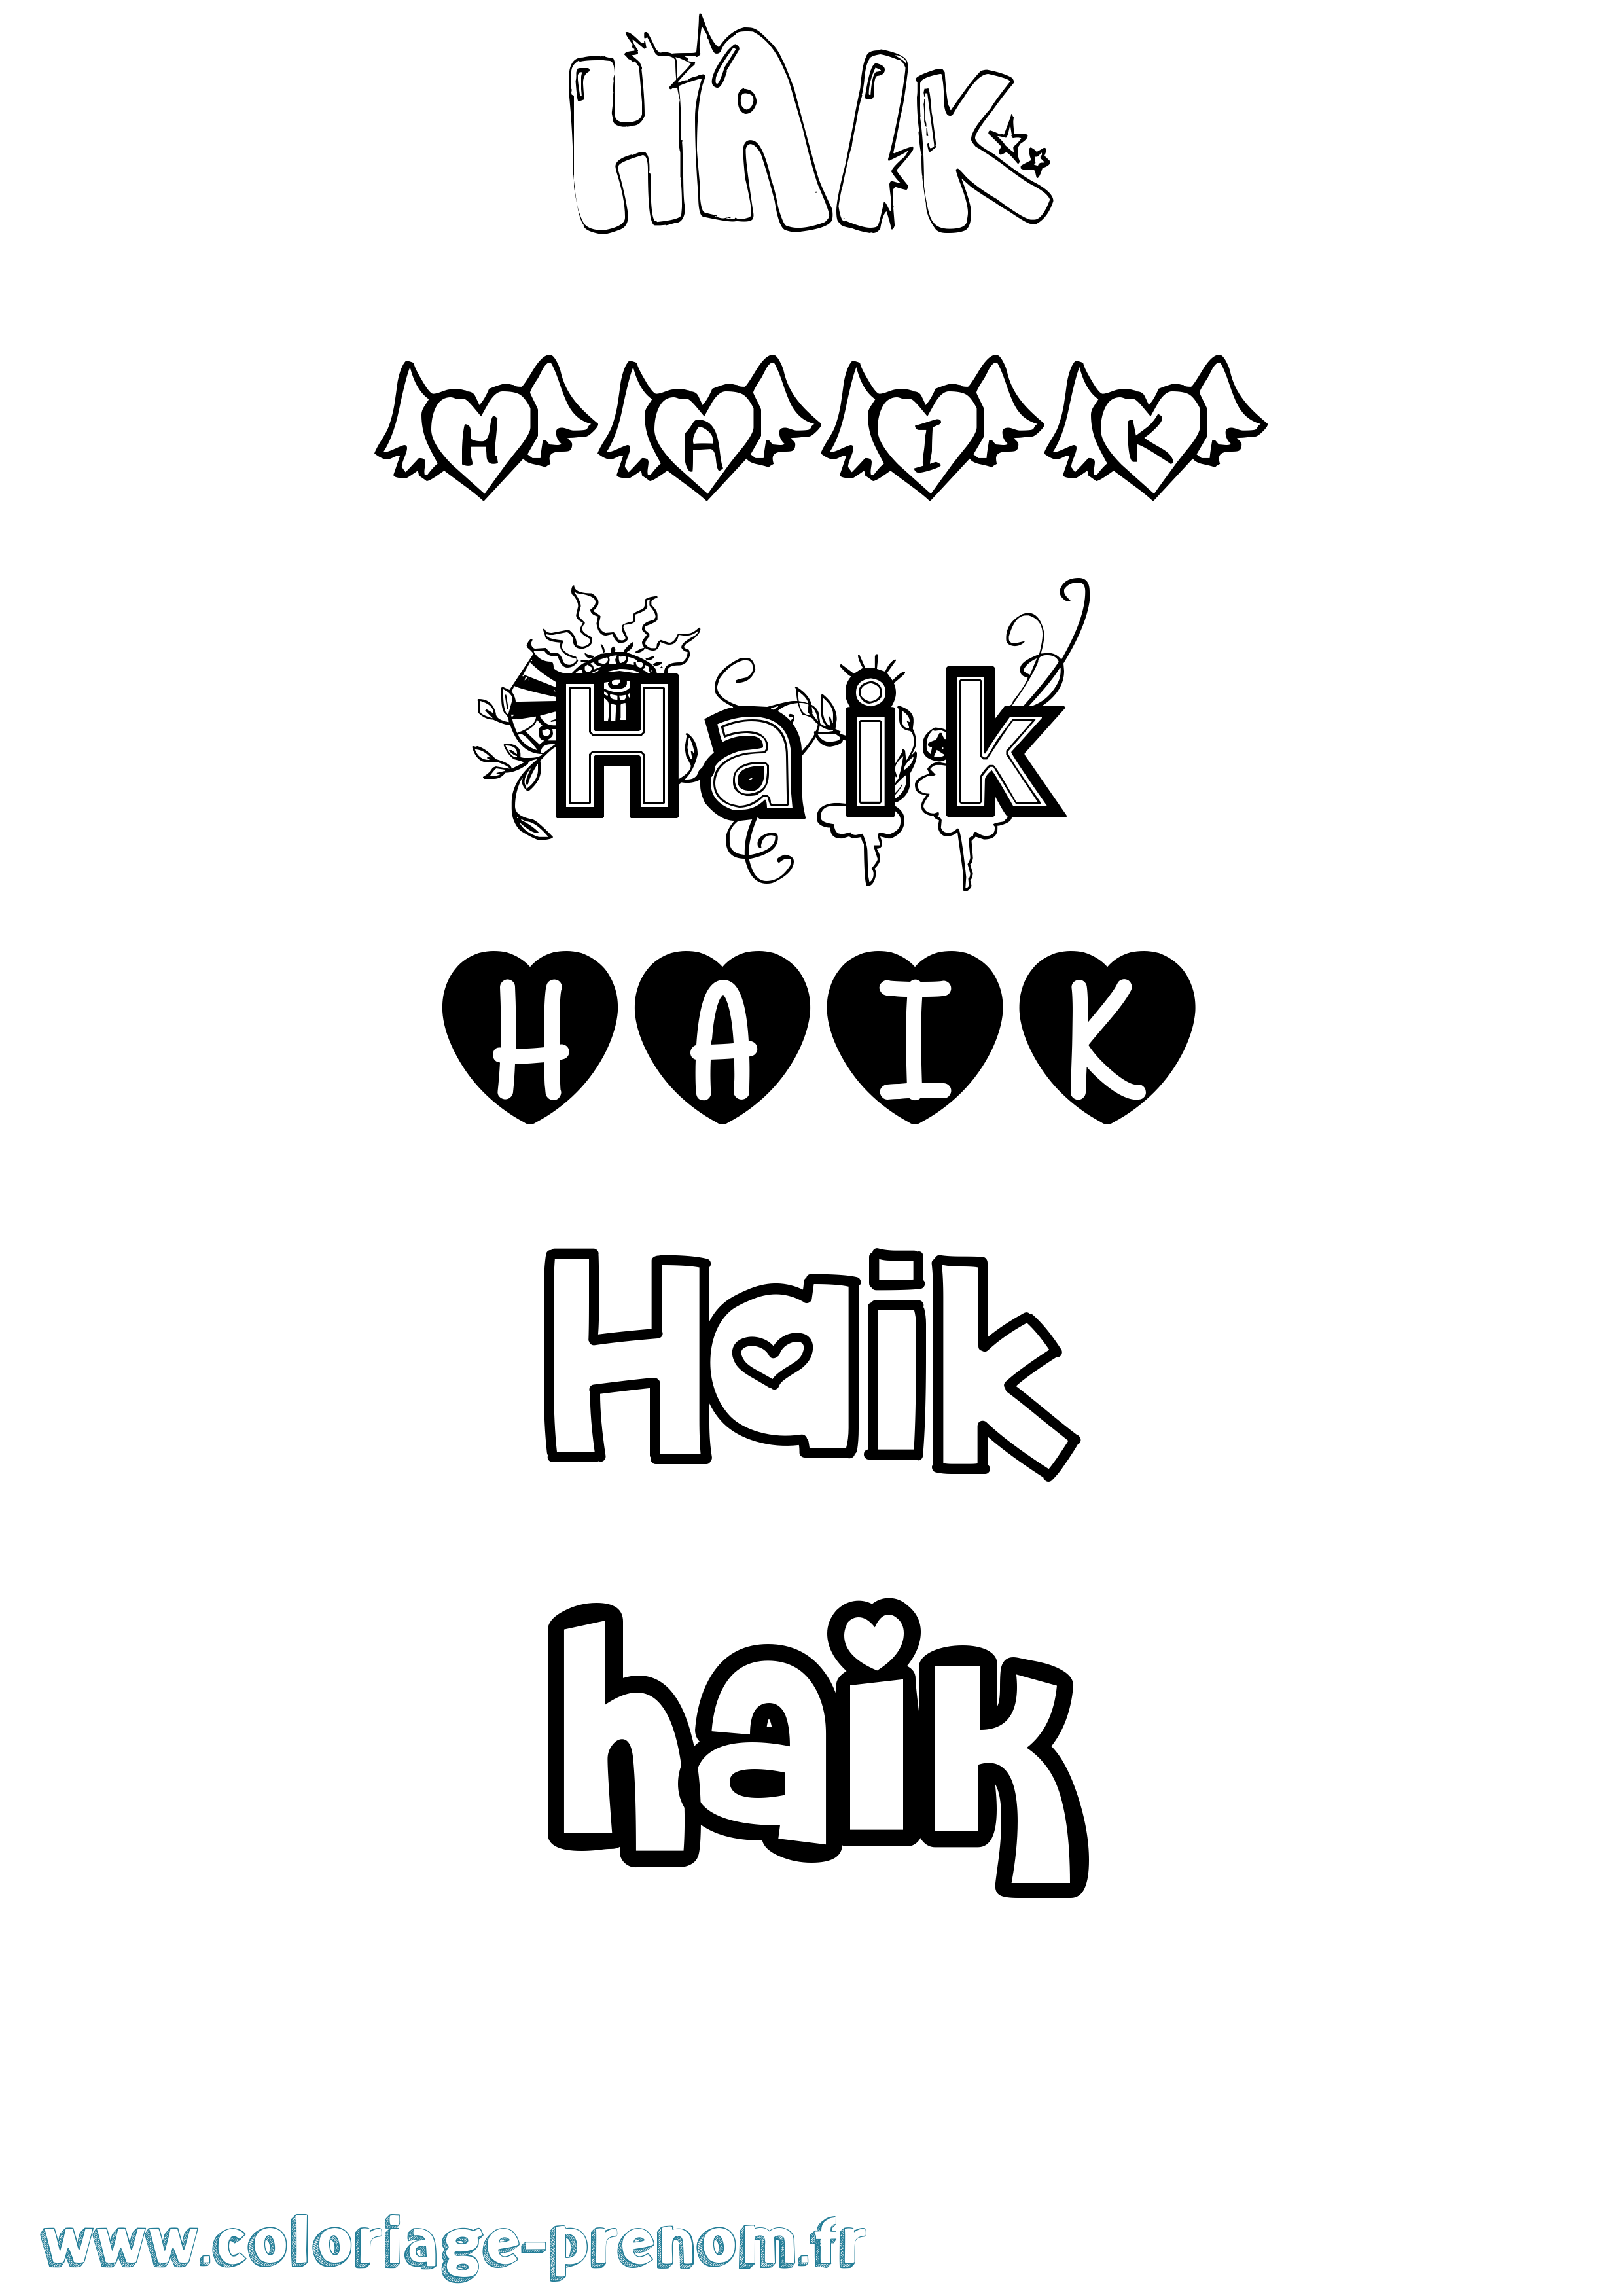 Coloriage prénom Haik Girly